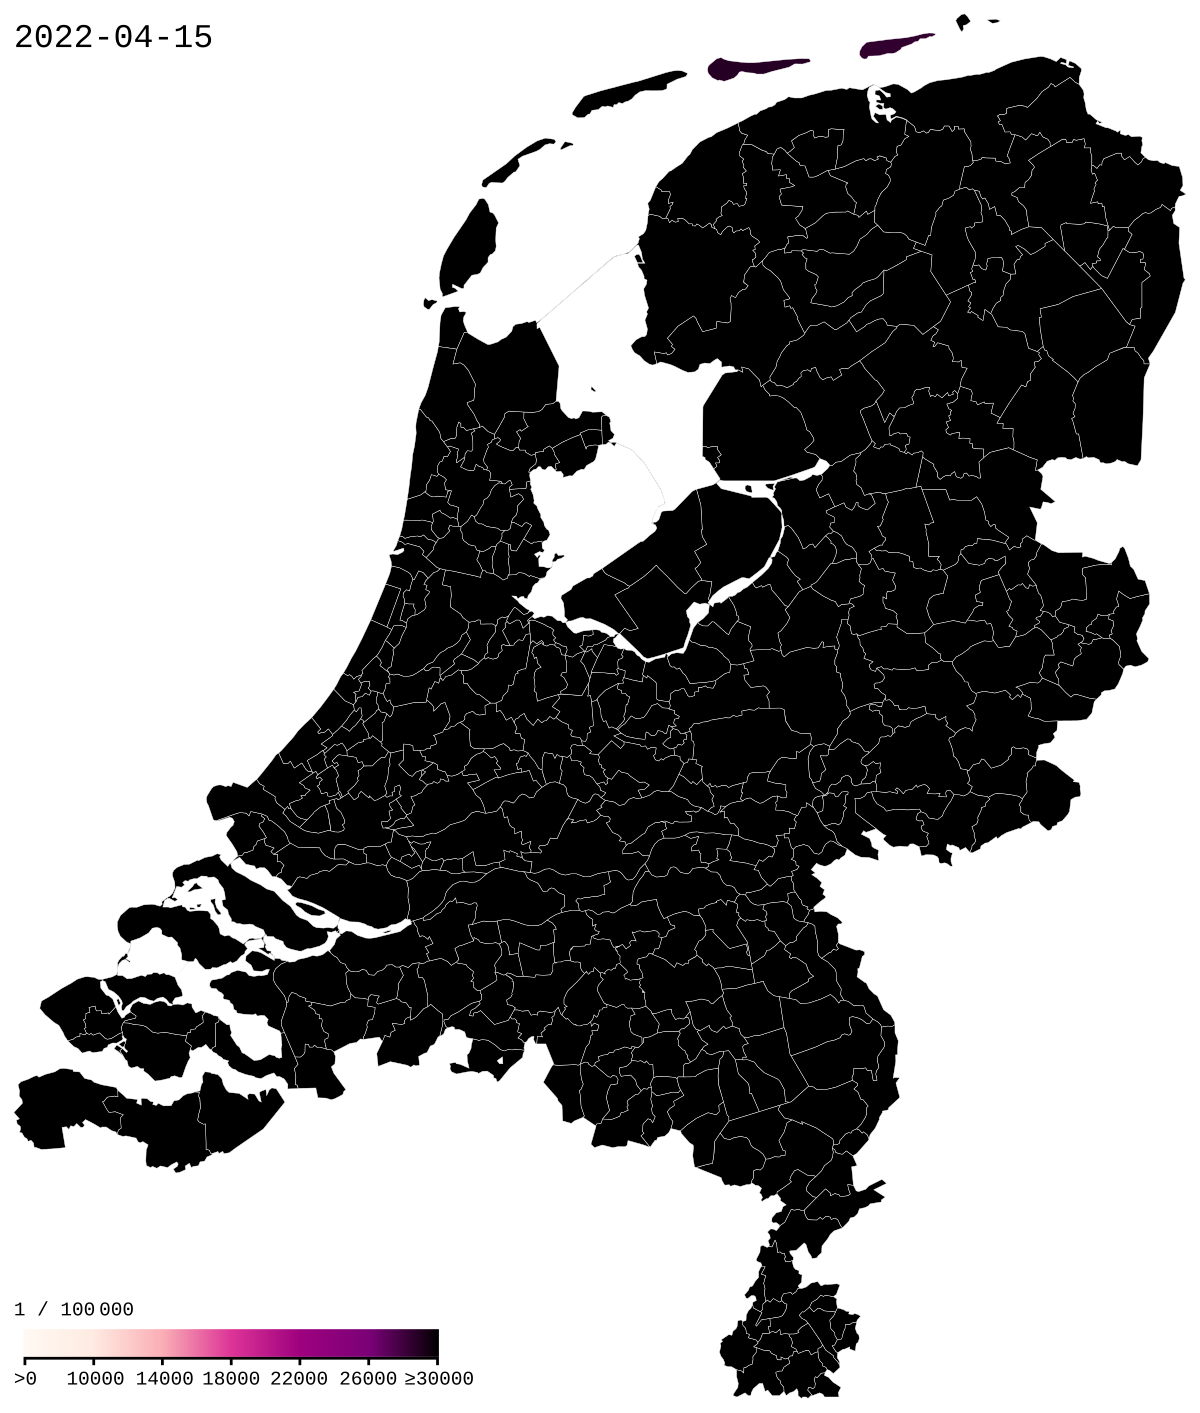 COVID-19-Pandemie im Königreich der Niederlande – Wikipedia